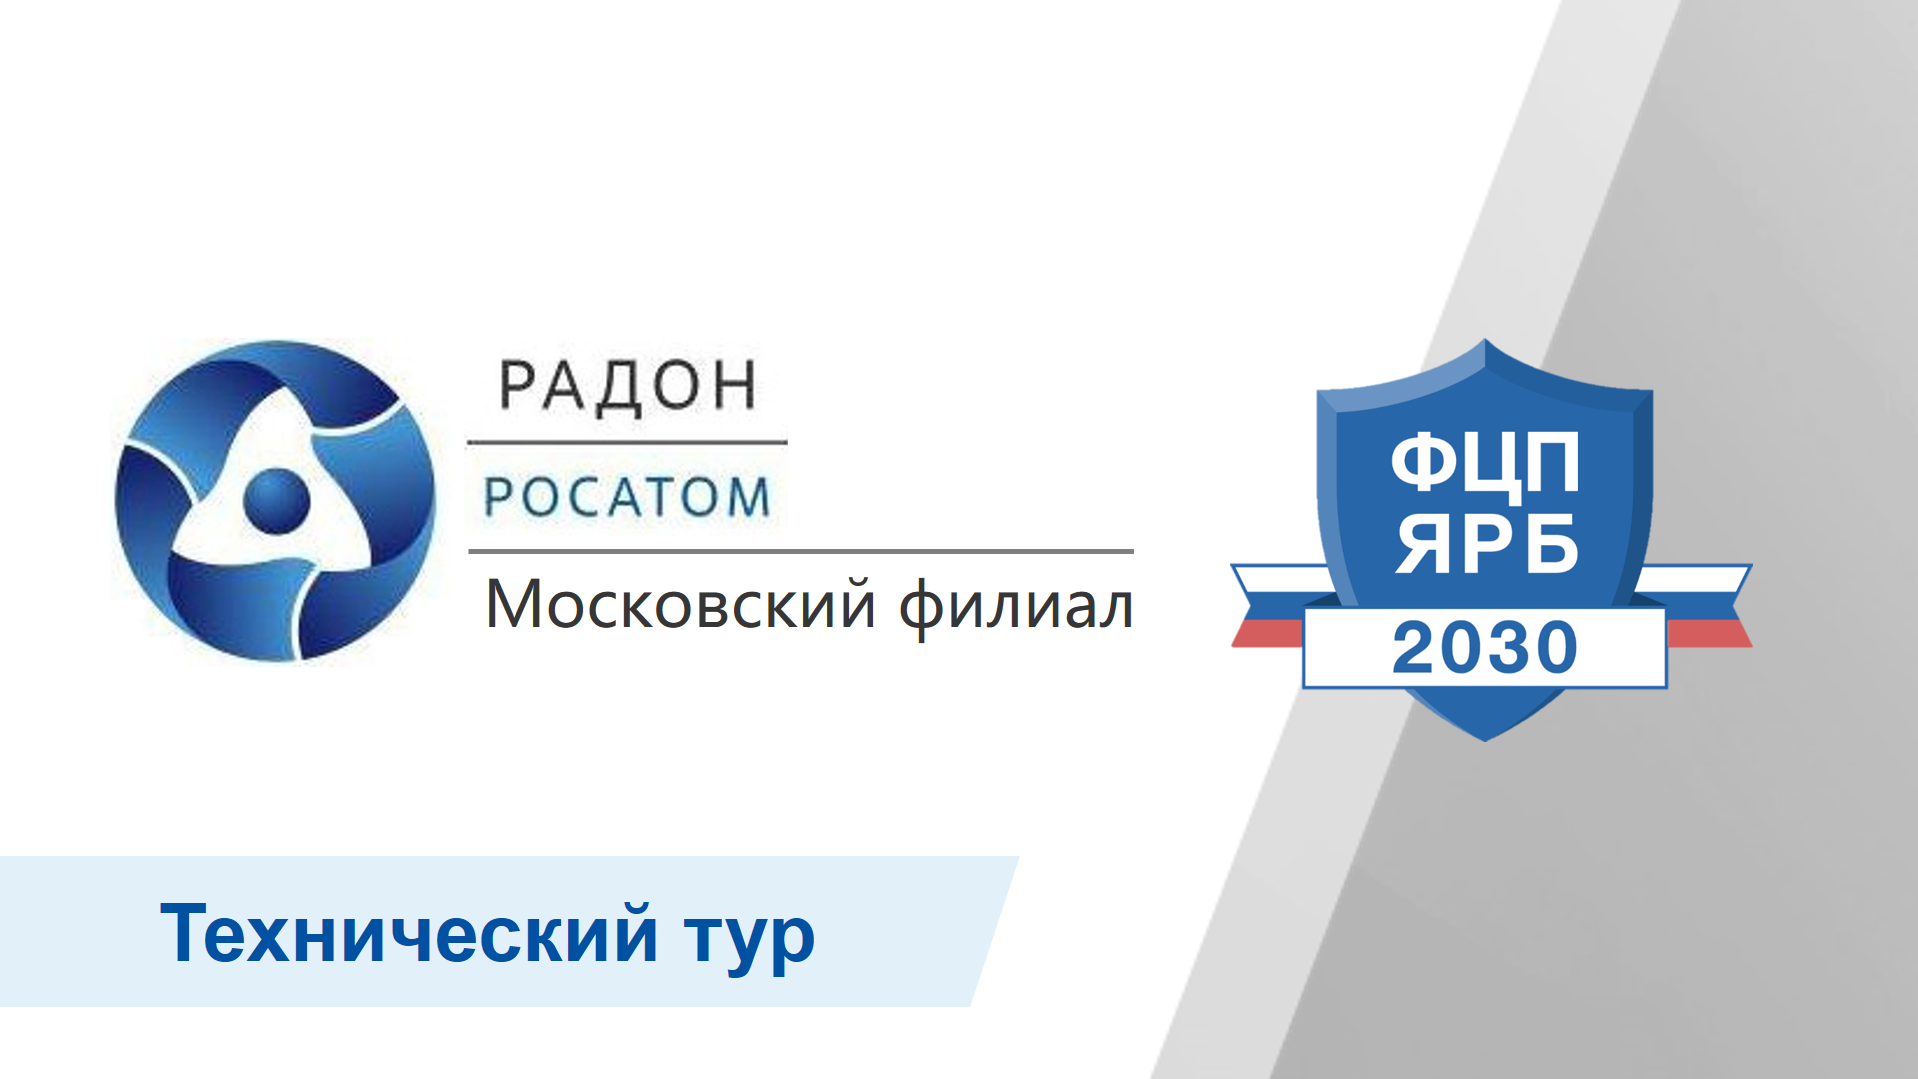 Московский филиал ФГУП «РАДОН» представит текущие результаты и планы выполнения мероприятий ФЦП ЯРБ-2 в рамках технического тура